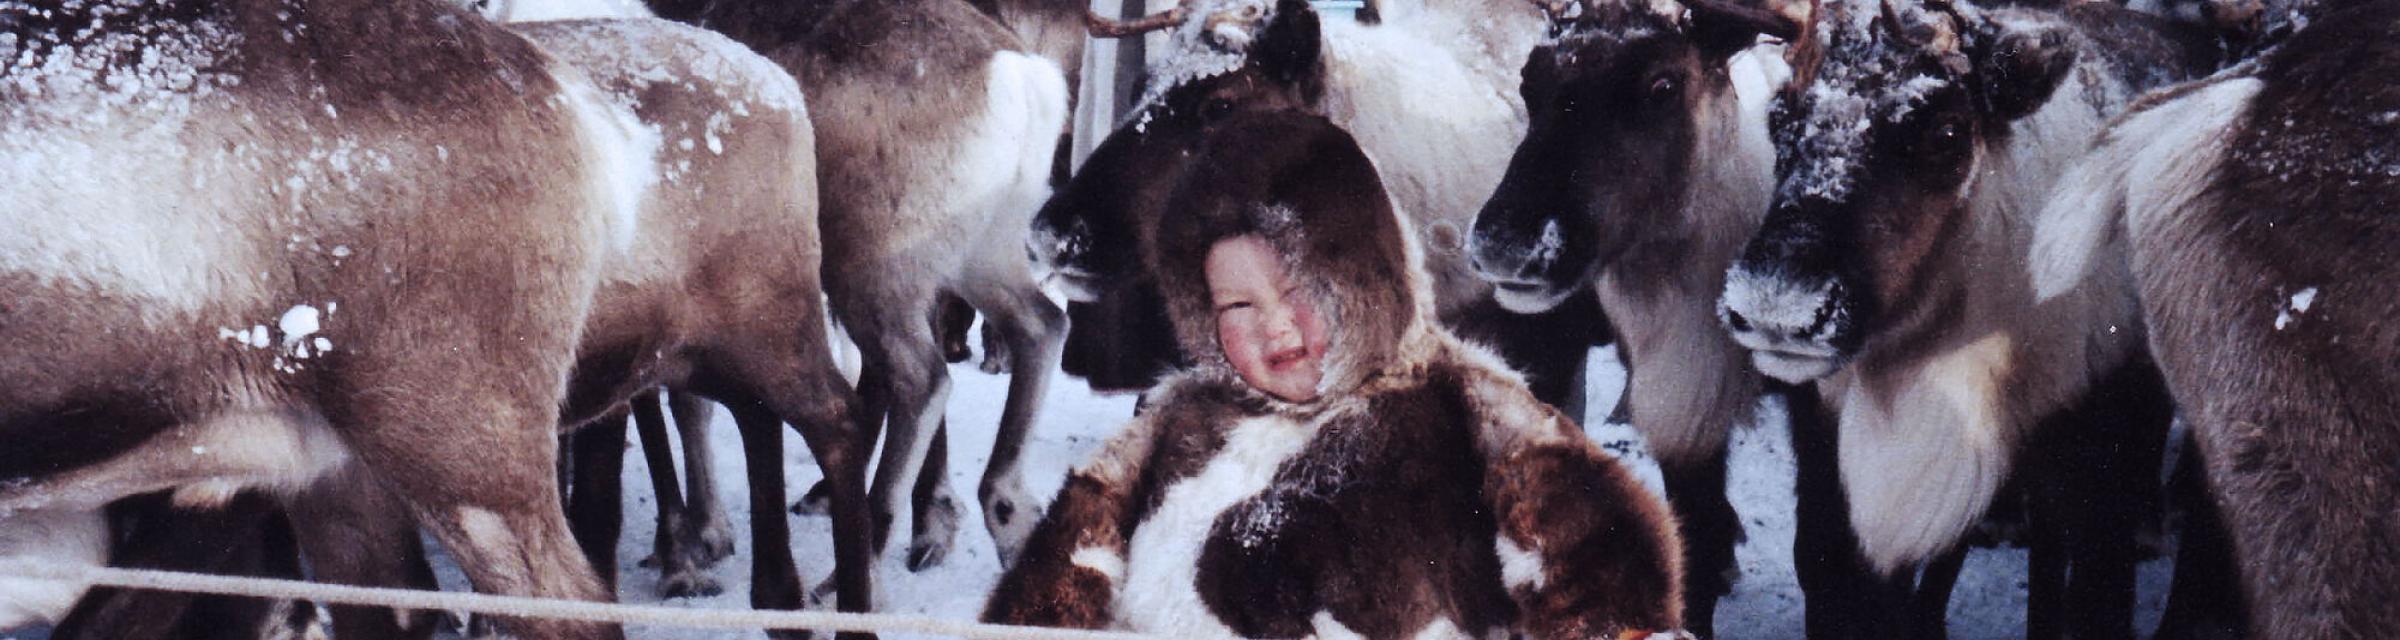 Child among reindeers